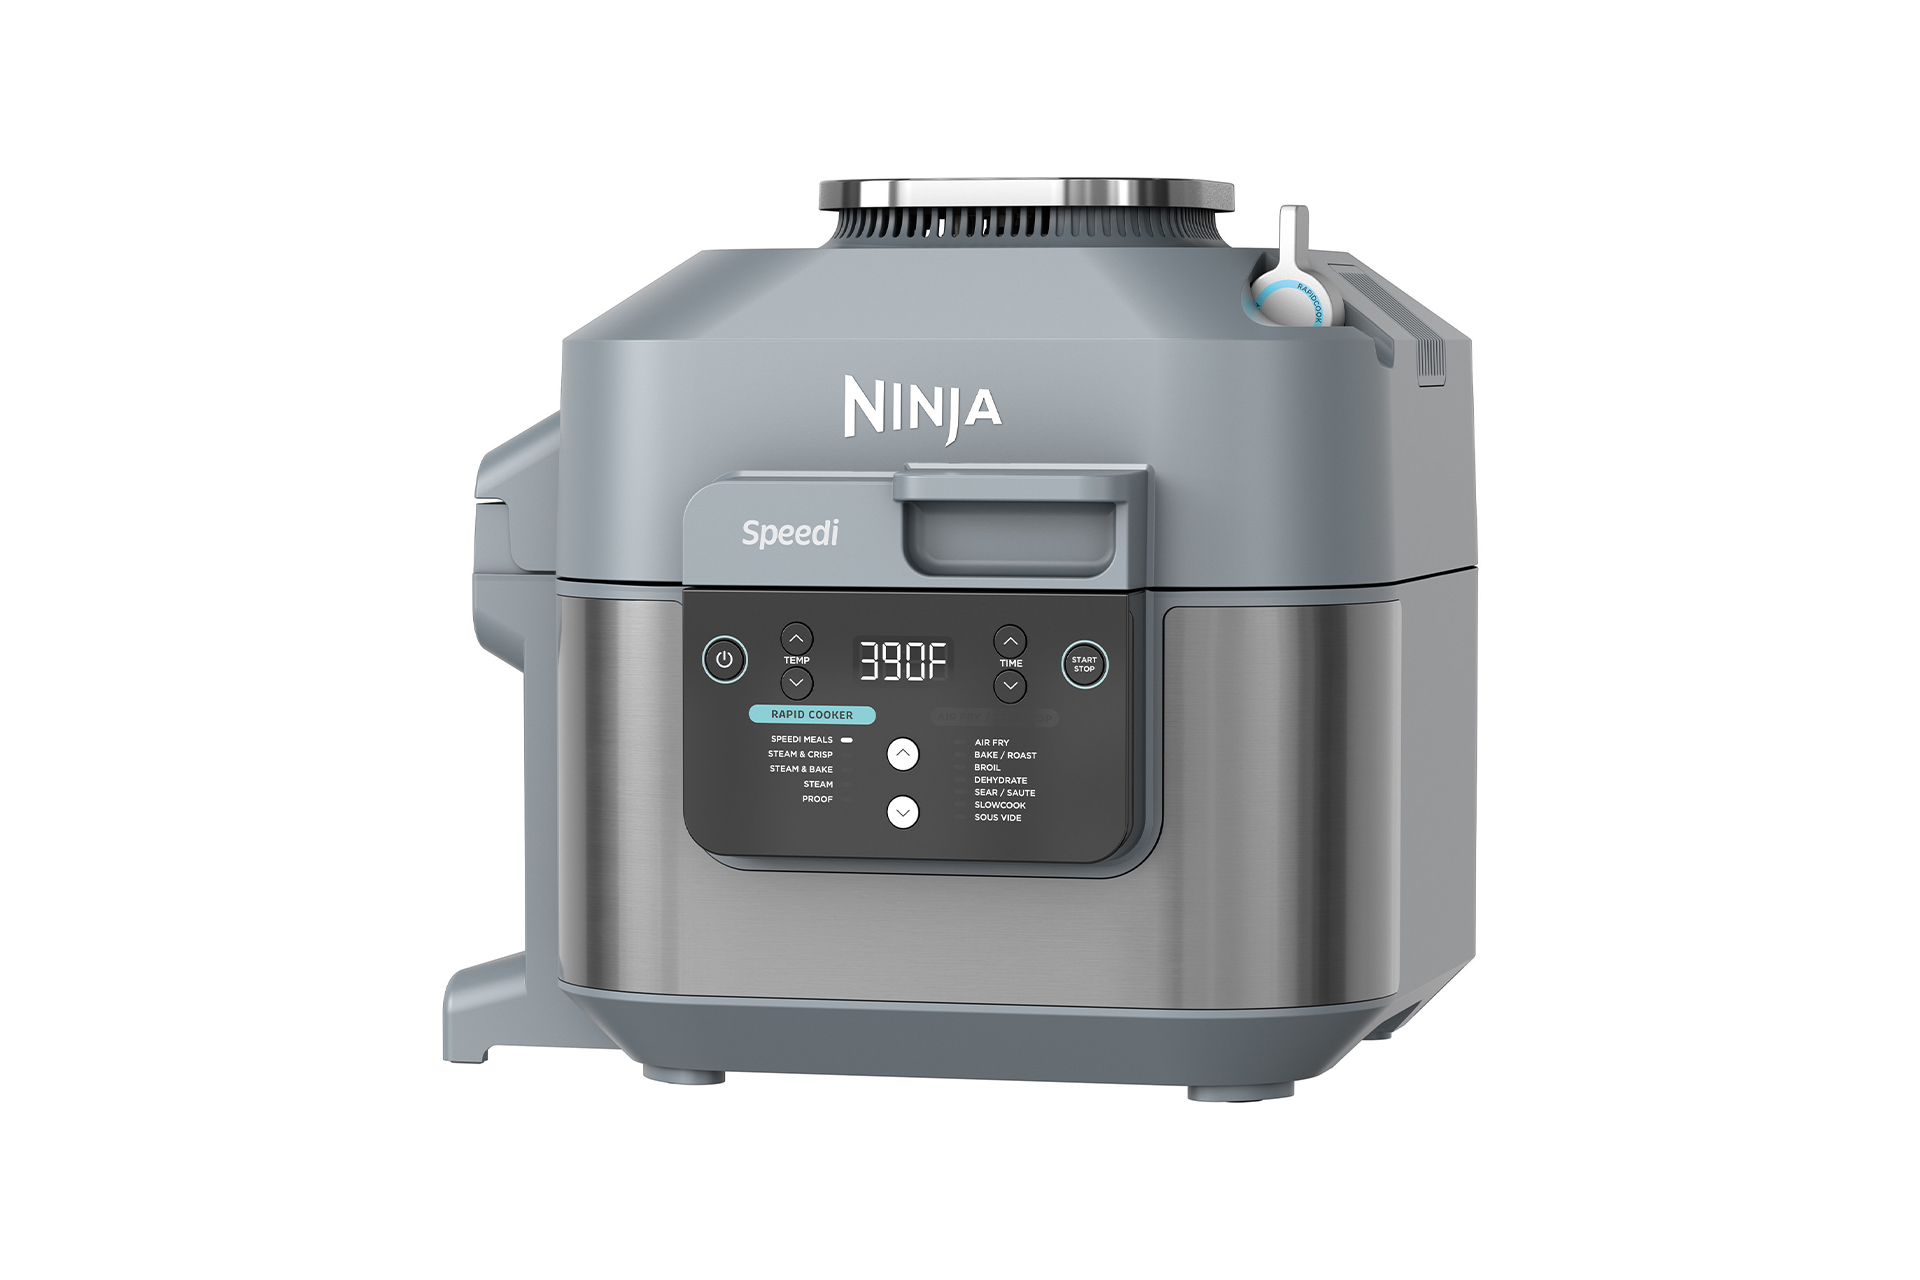 Ninja Speedi Air Fryer & Rapid Cooker